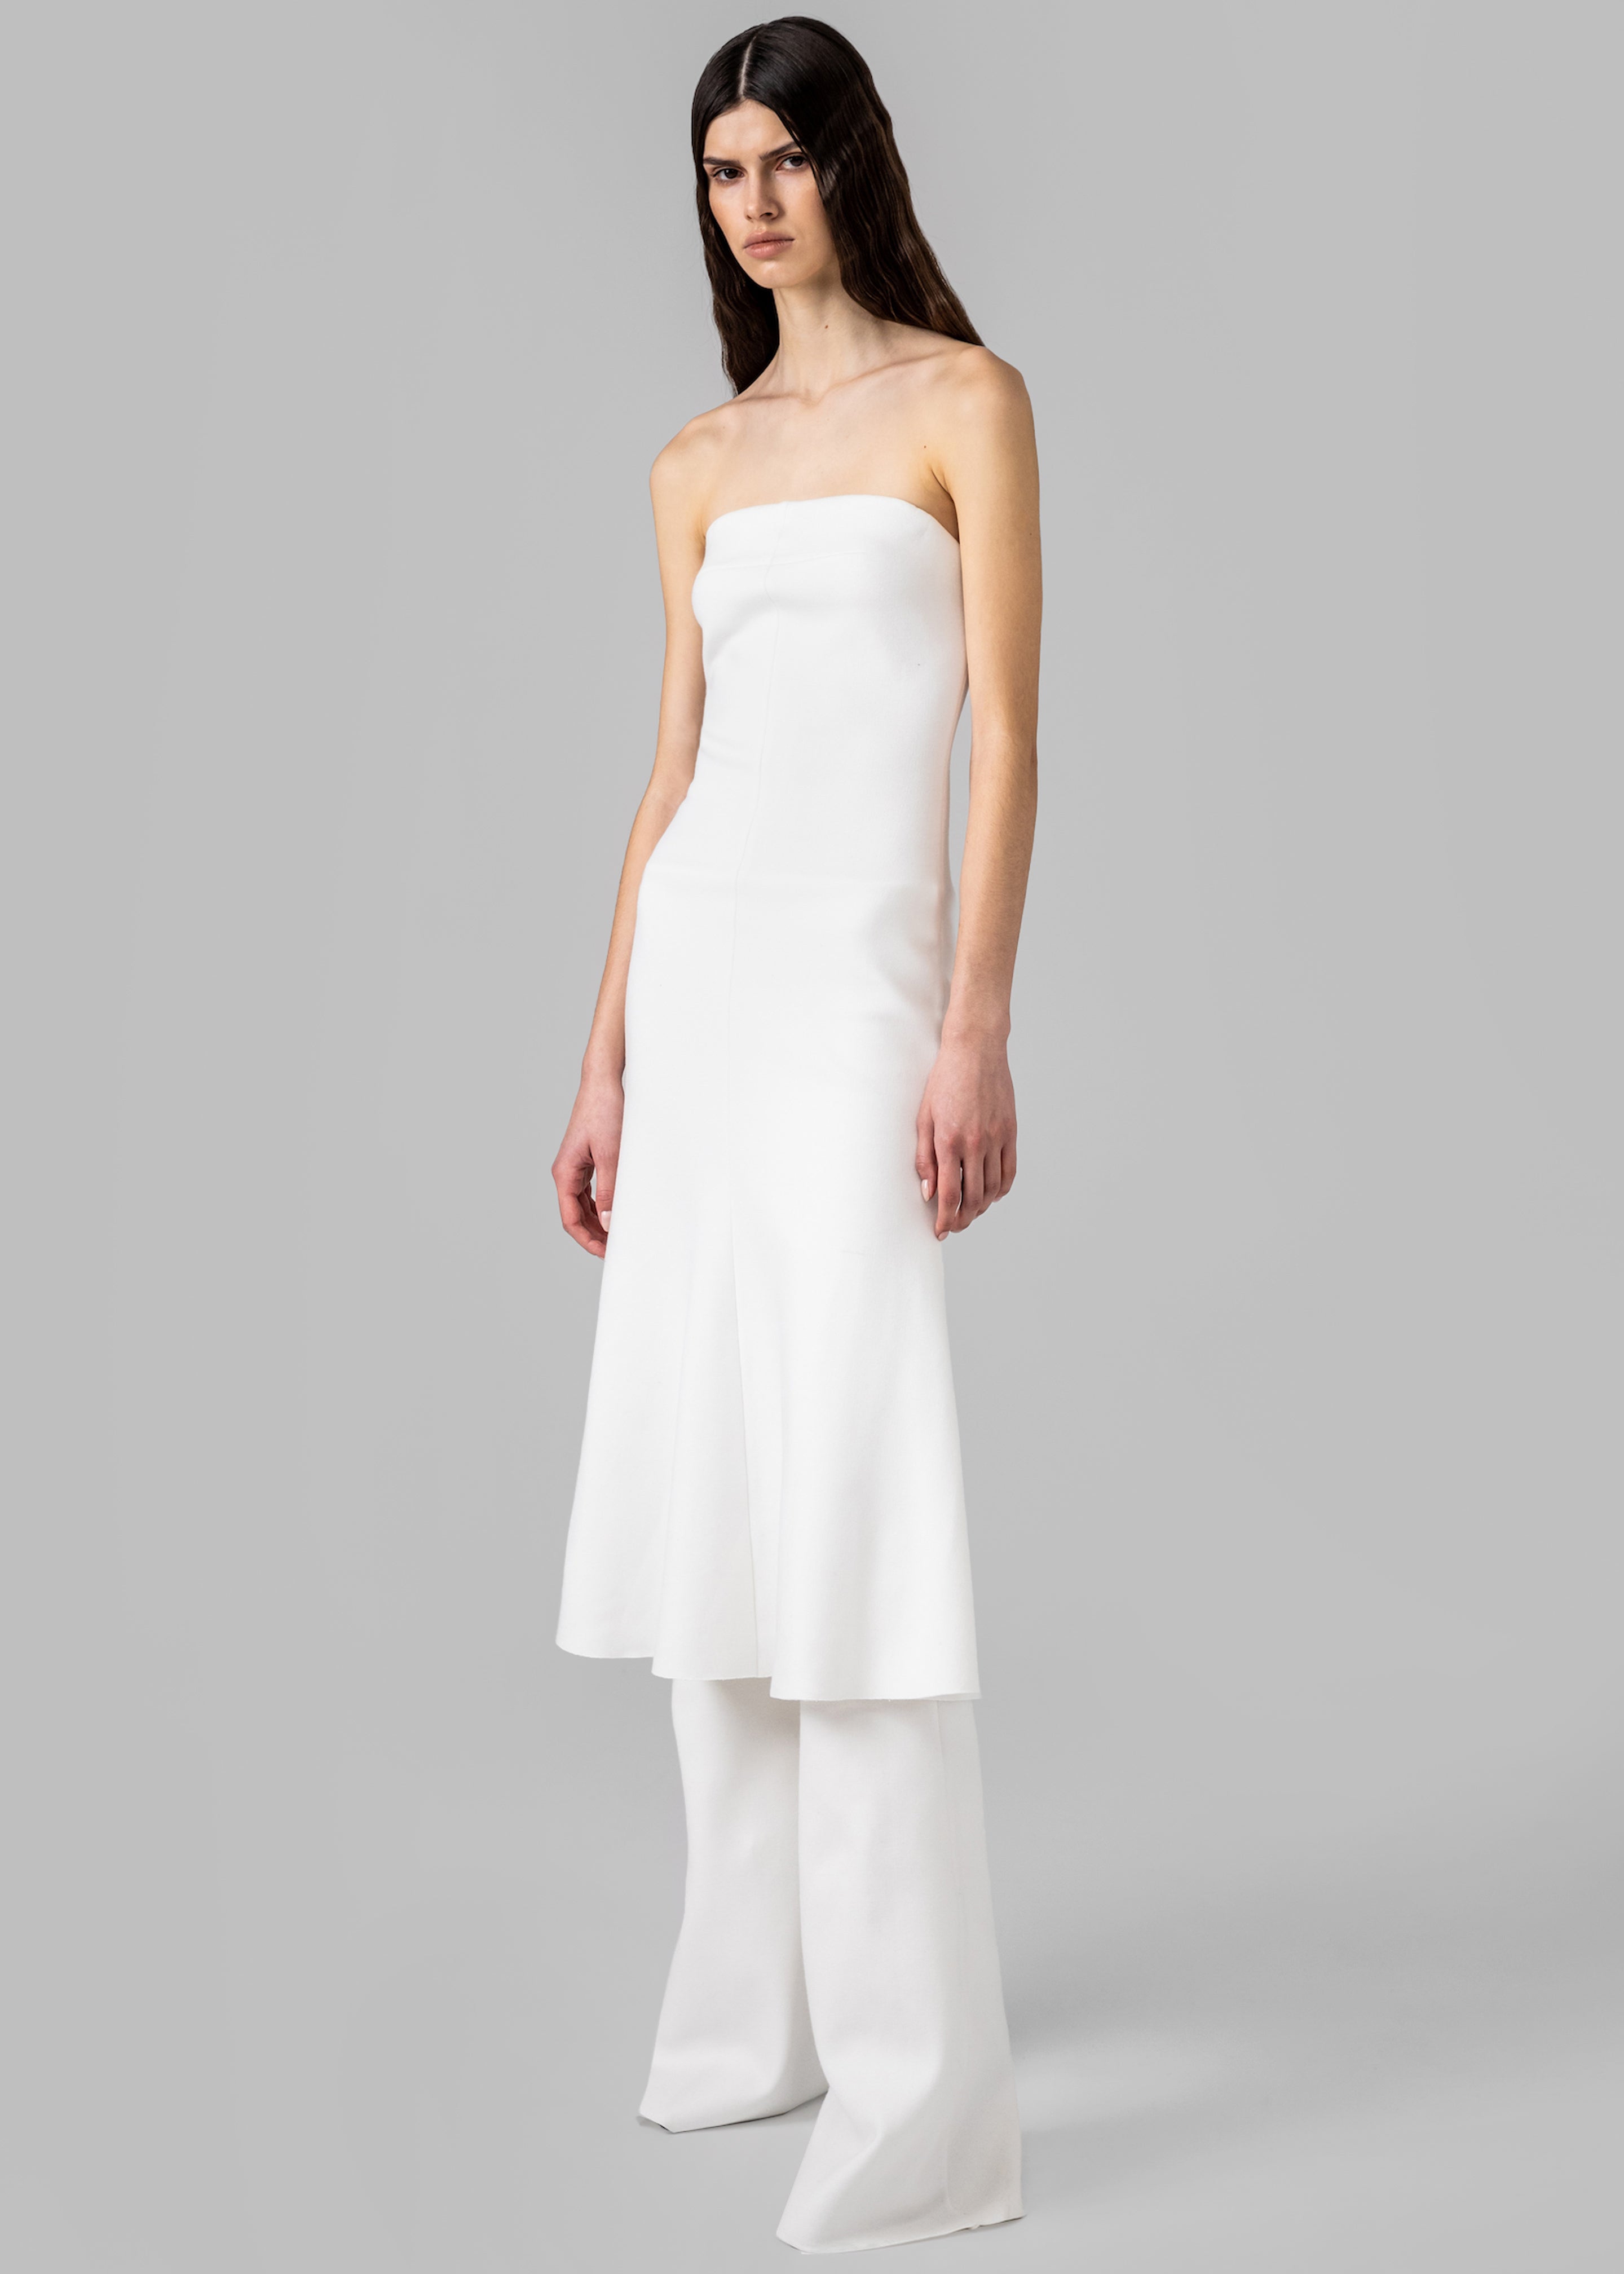 Gudu Dress #08 - White - 1